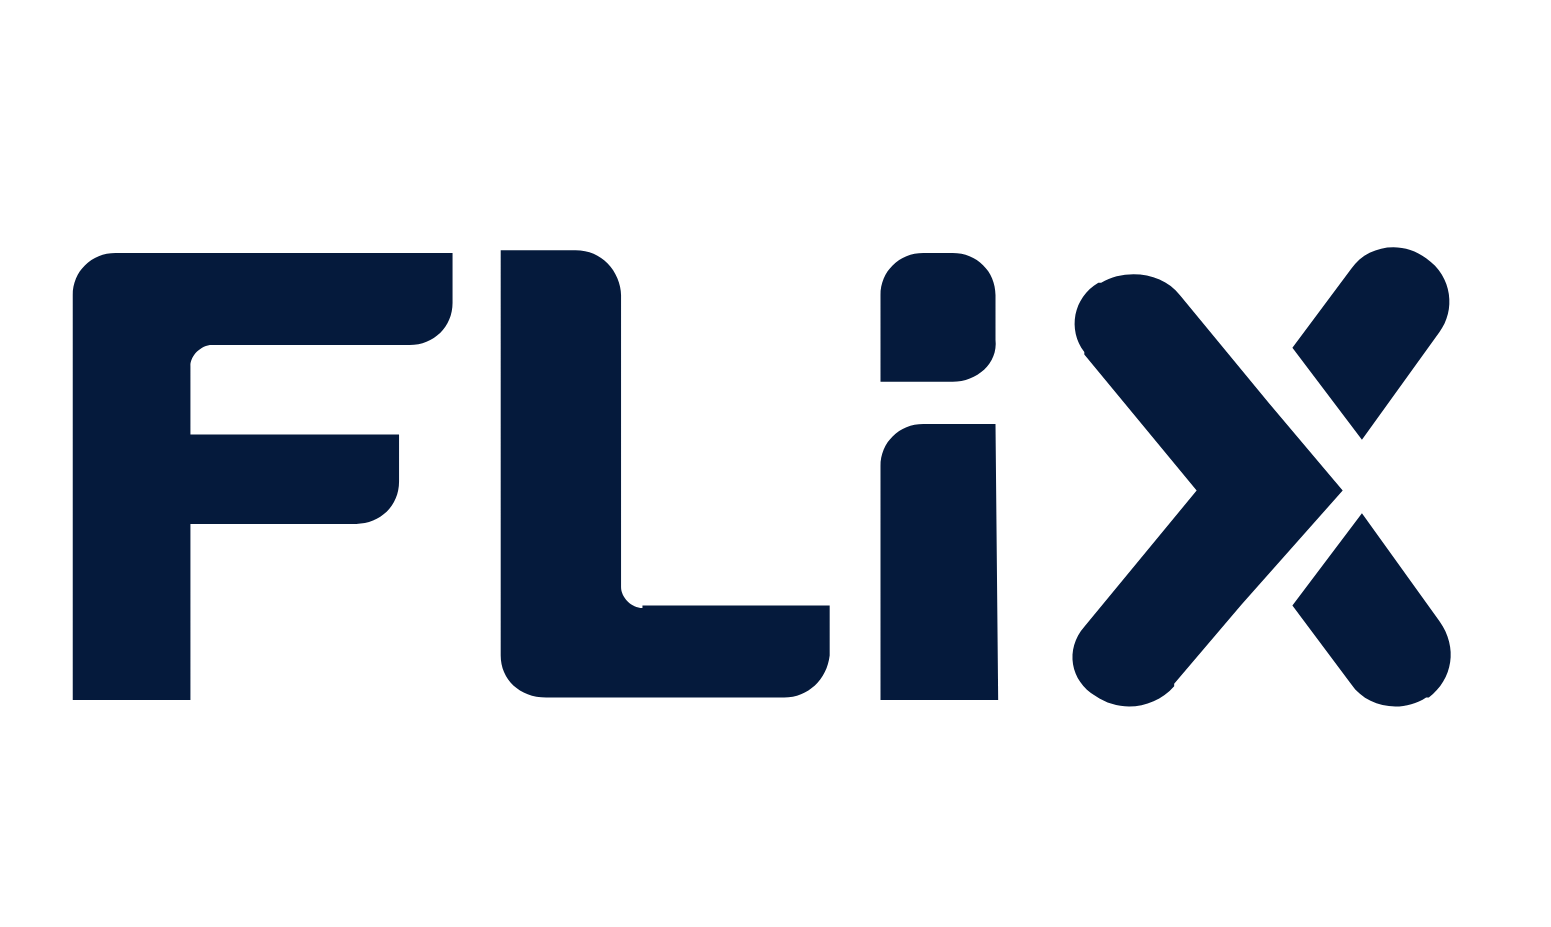 Flix Logo